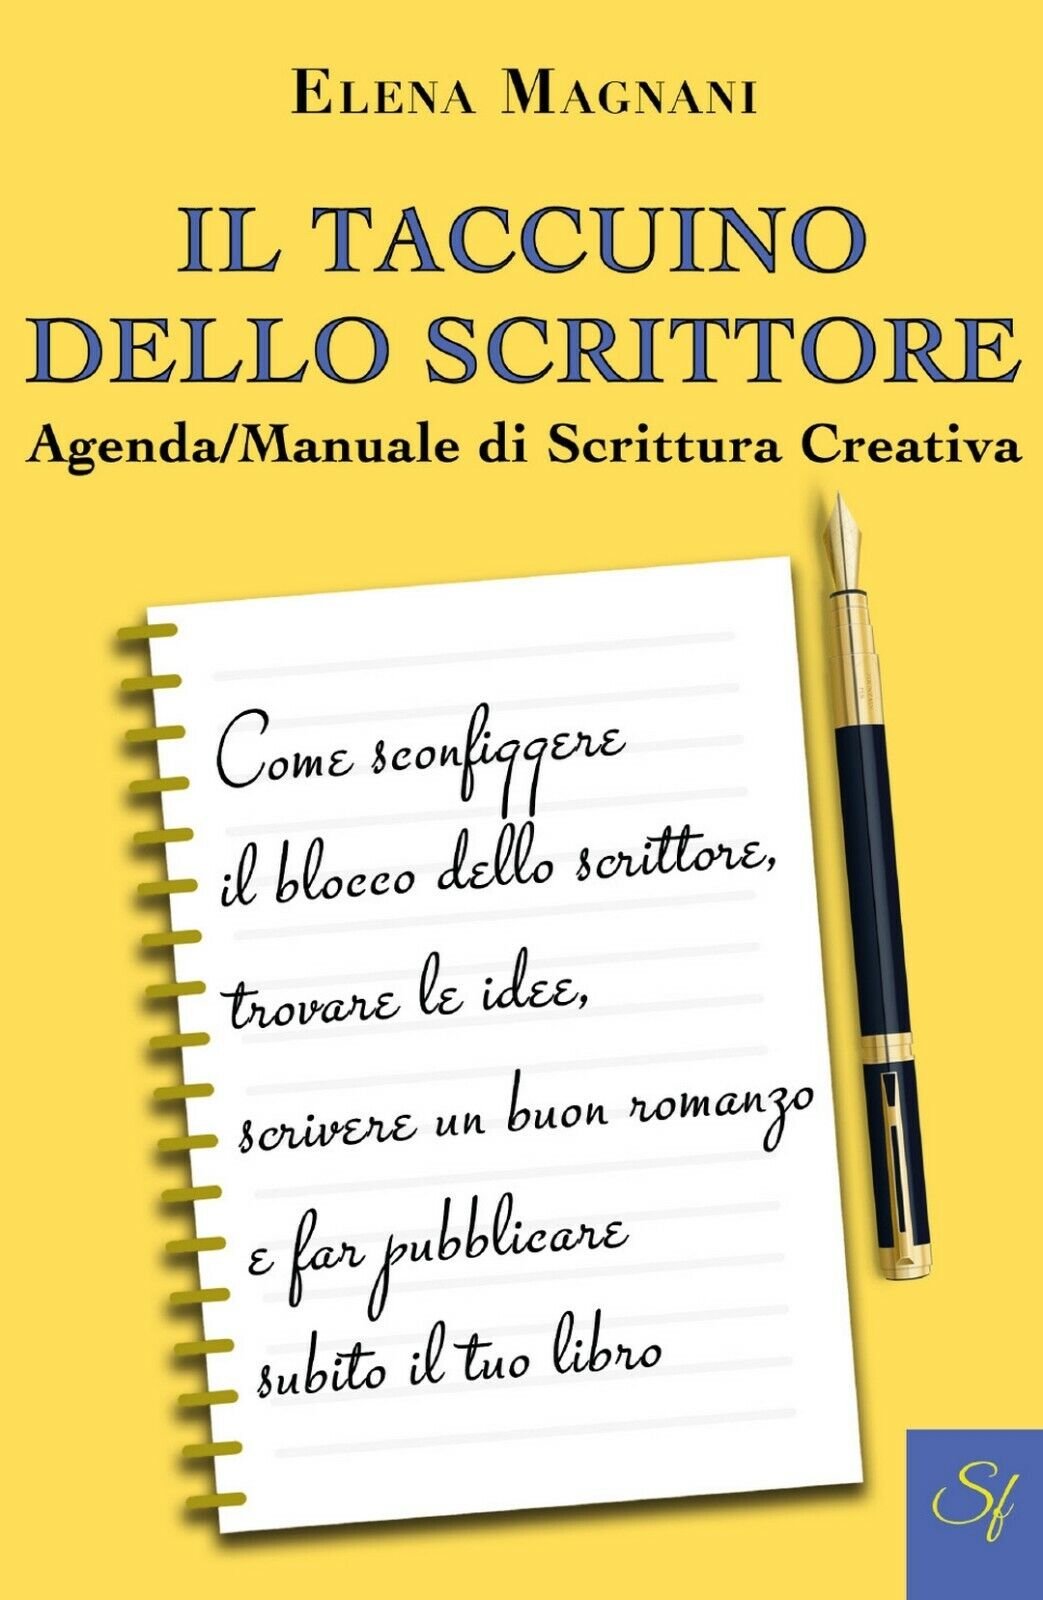 Il Taccuino dello Scrittore Agenda/Manuale di Scrittura Creativa, Elena Magnani libro usato